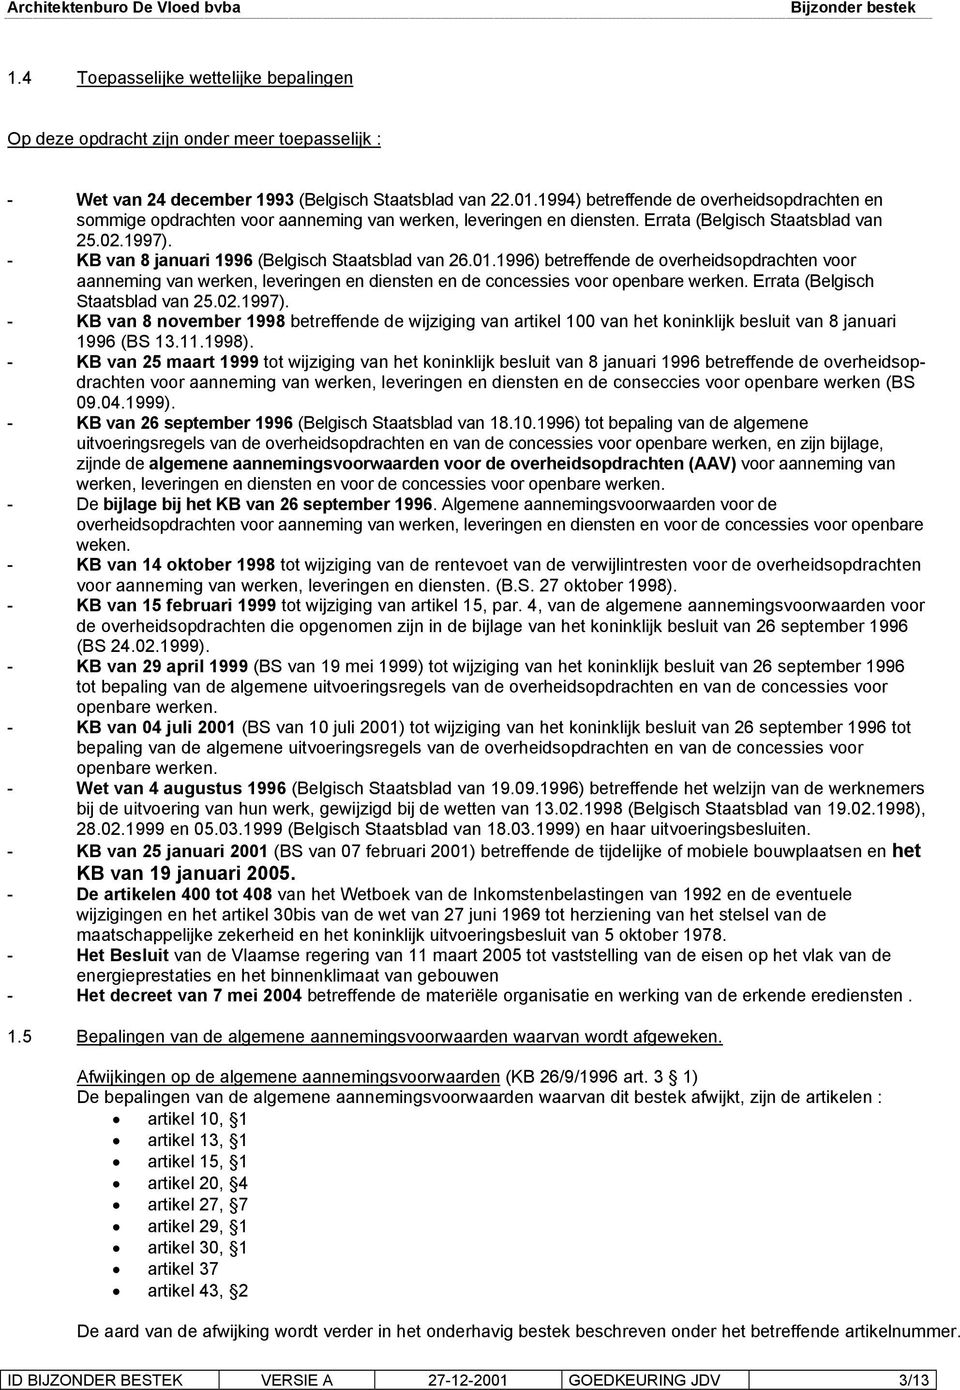 - KB van 8 januari 1996 (Belgisch Staatsblad van 26.01.1996) betreffende de overheidsopdrachten voor aanneming van werken, leveringen en diensten en de concessies voor openbare werken.